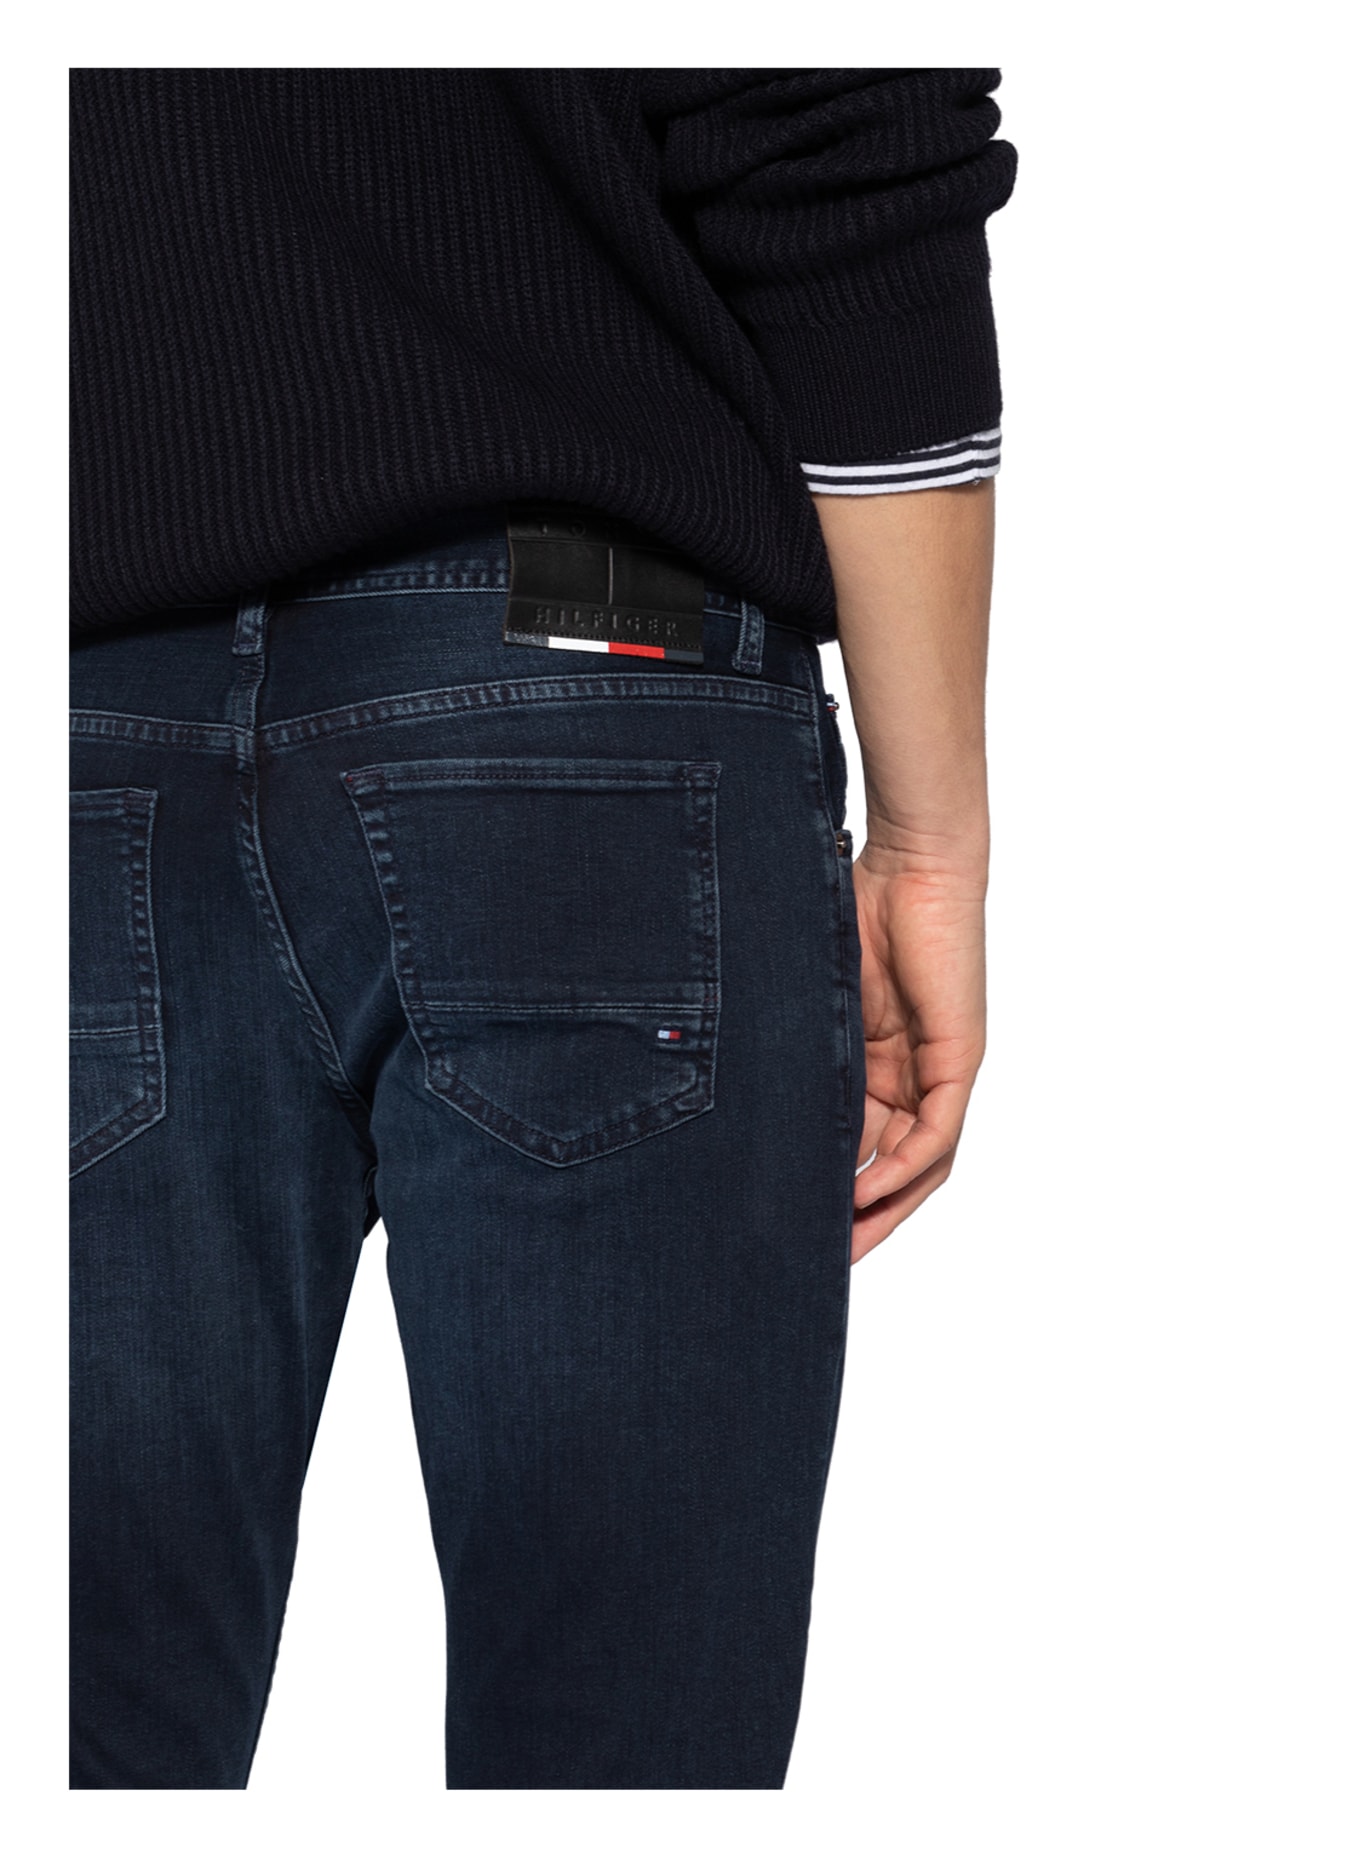 TOMMY HILFIGER Jeans BLEECKER Slim Fit, Farbe: 1CS Iowa Blueblack (Bild 5)